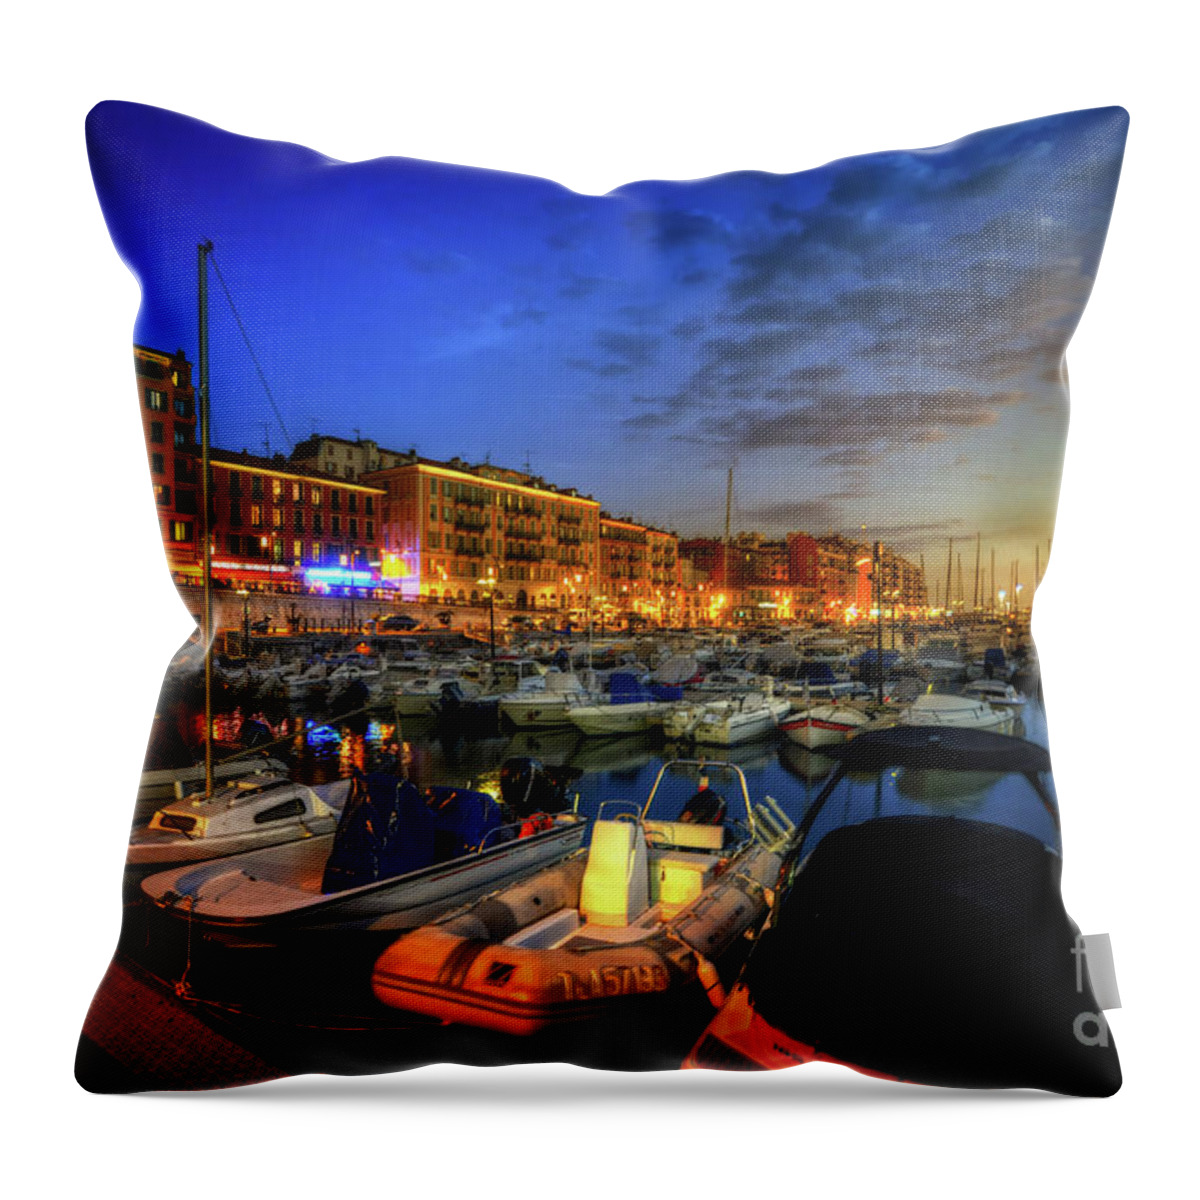 Yhun Suarez Throw Pillow featuring the photograph Blue Hour At Port Nice 1.0 by Yhun Suarez